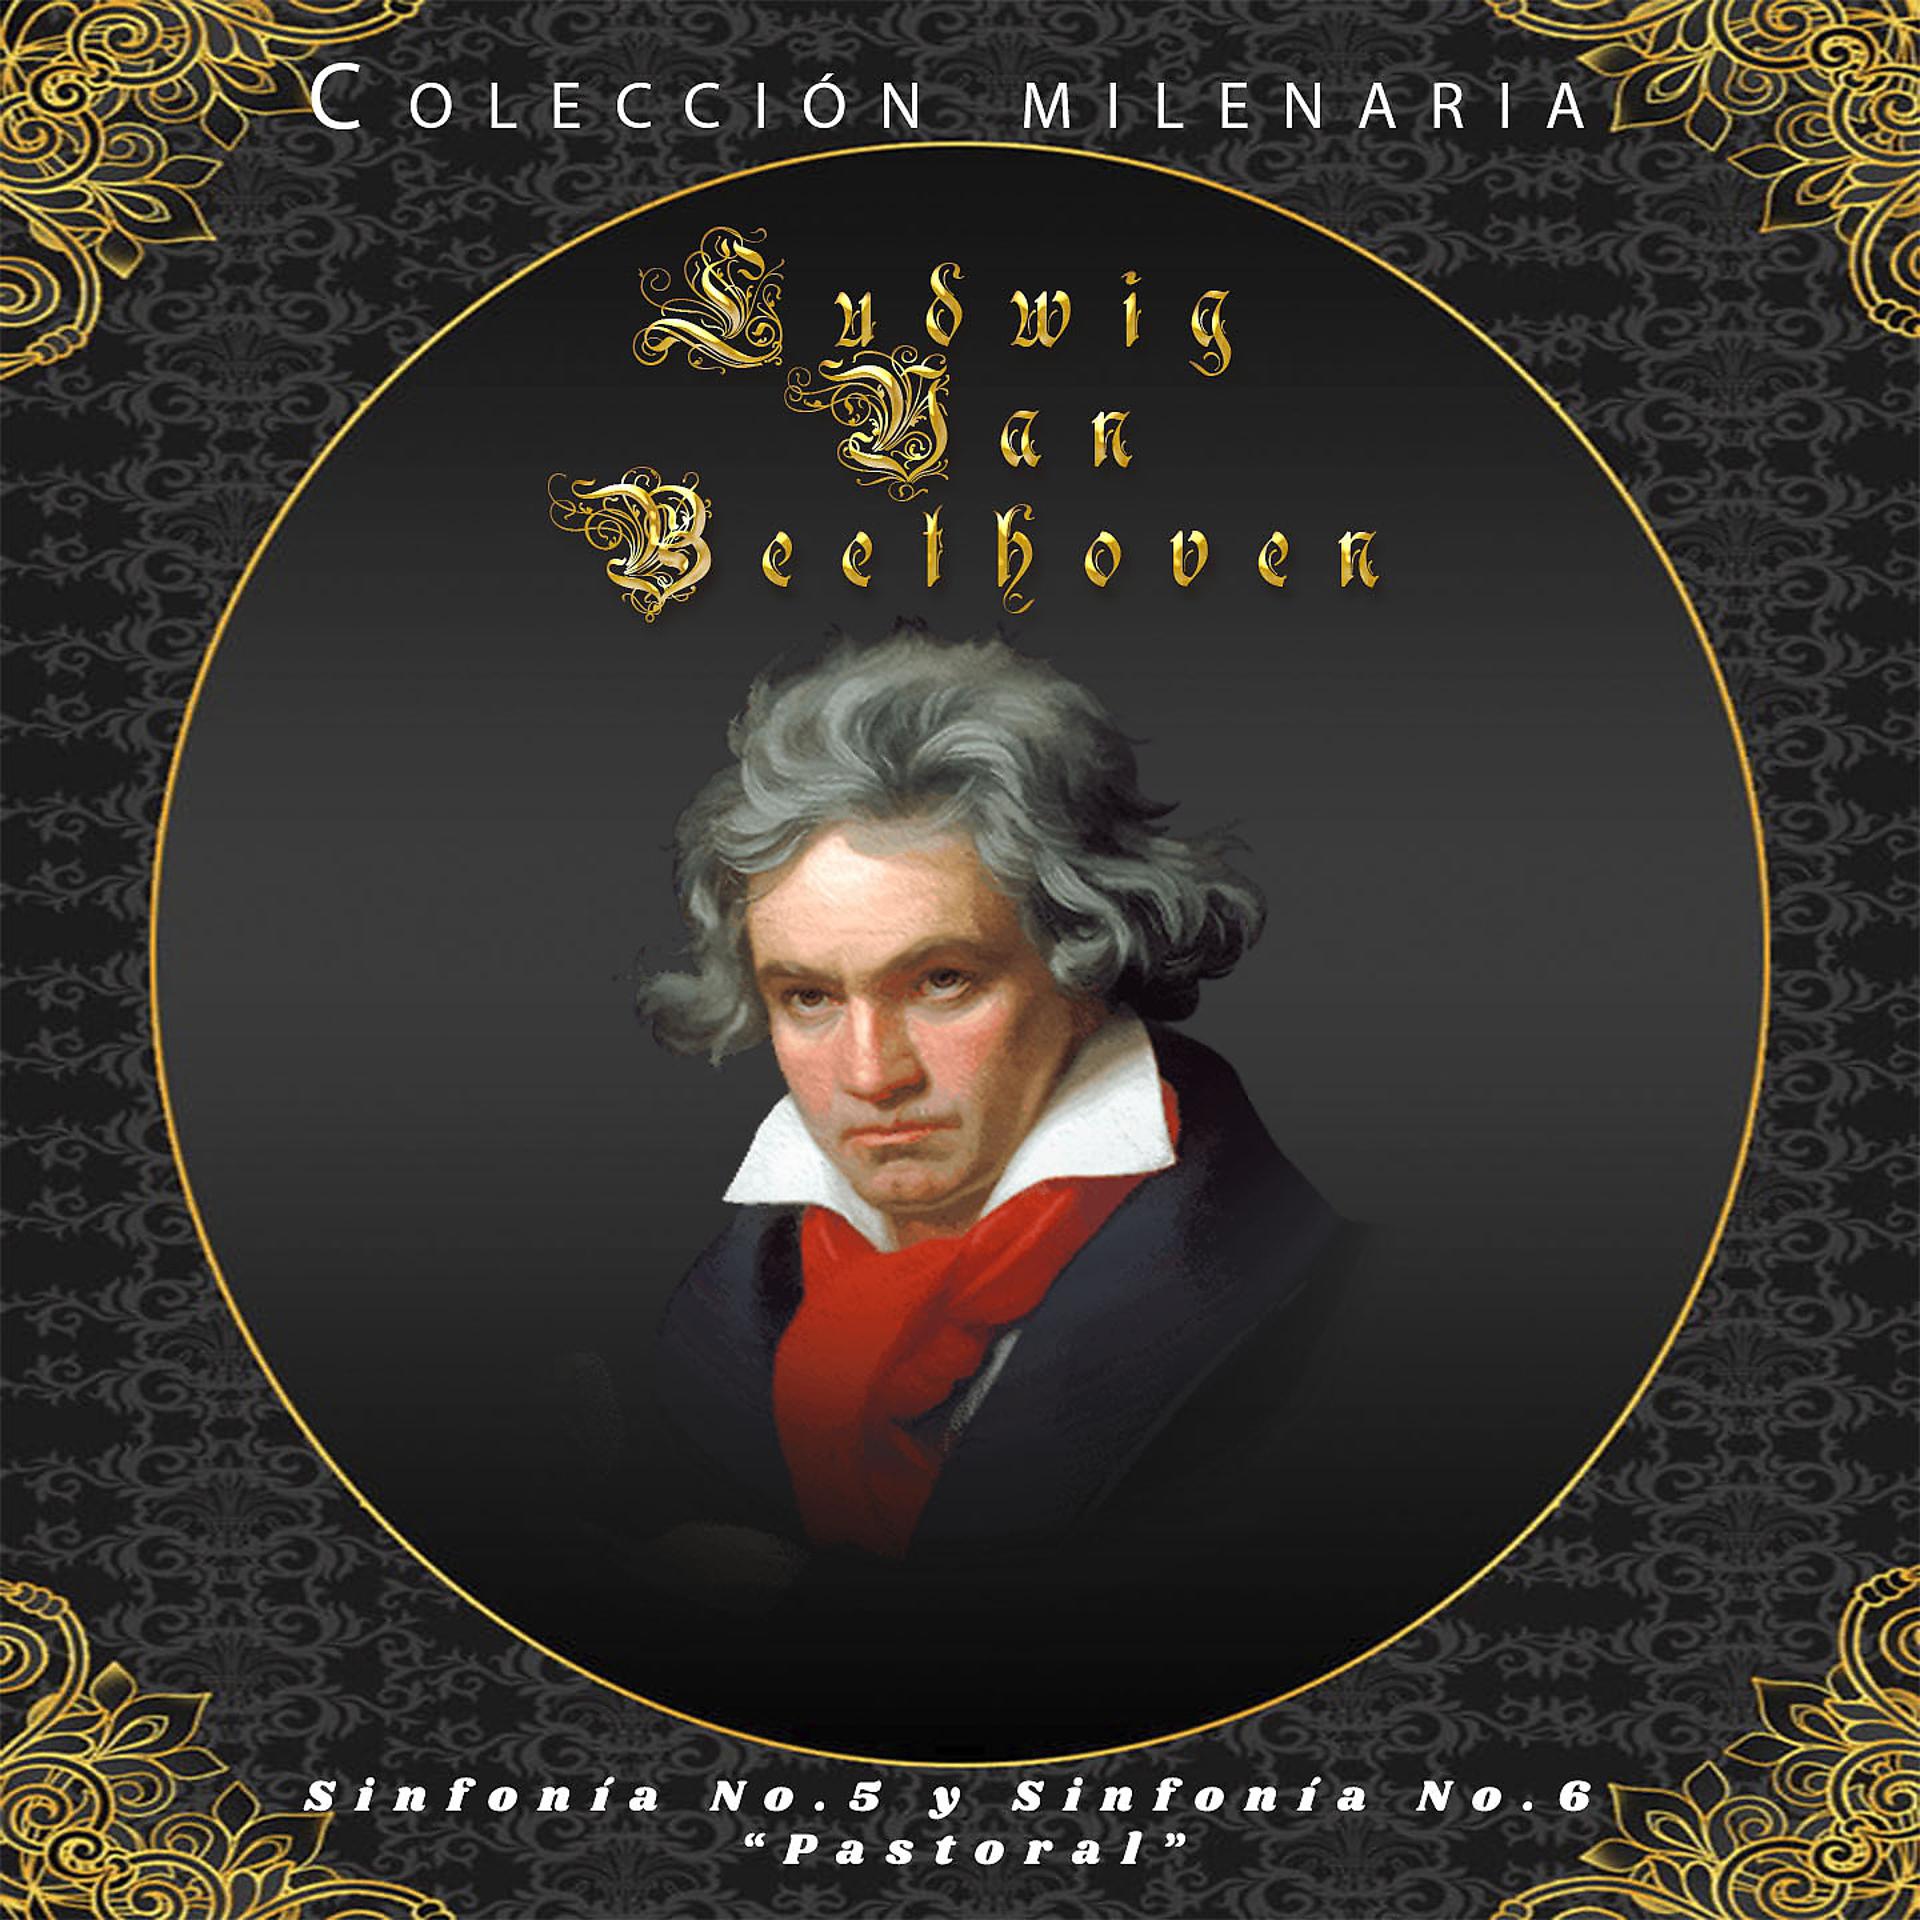 Постер альбома Colección Milenaria - Ludwig Van Beethoven "Sinfonía No. 5 y Sinfonía No. 6 "Pastoral"